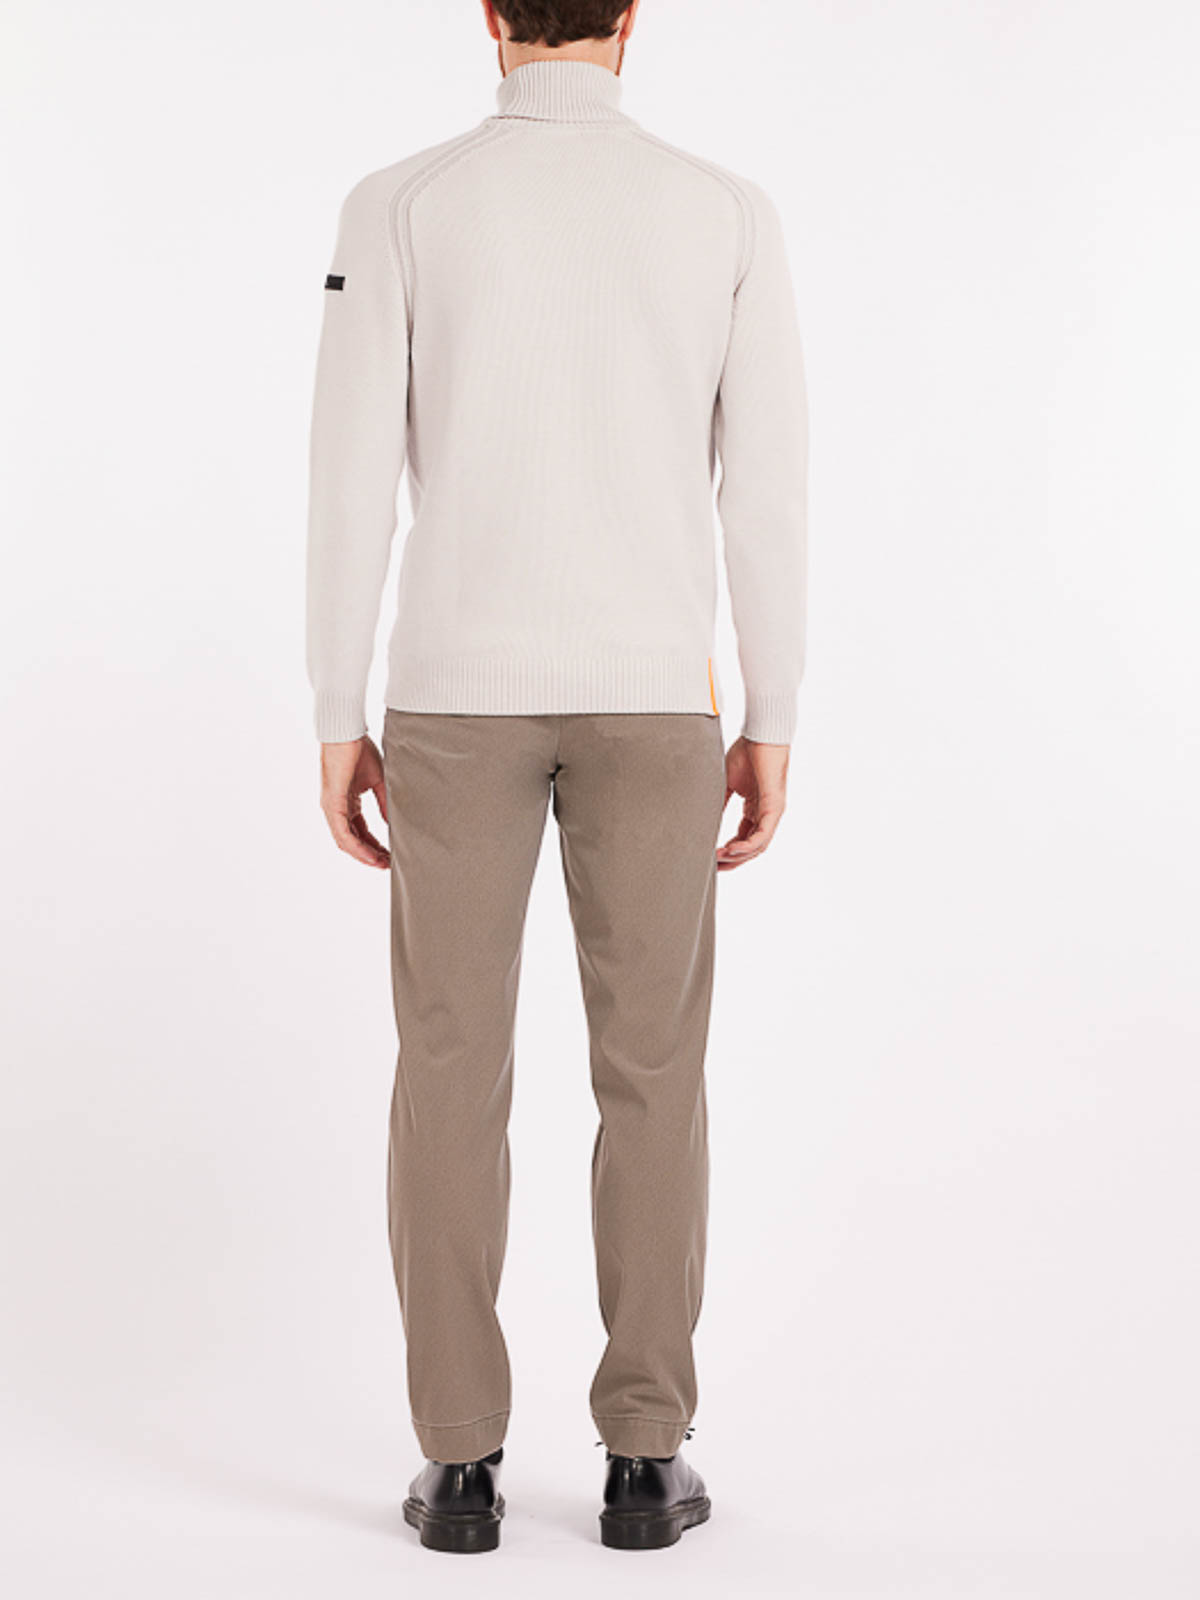 Shop Rrd Roberto Ricci Designs Turtleneck Sweater In White